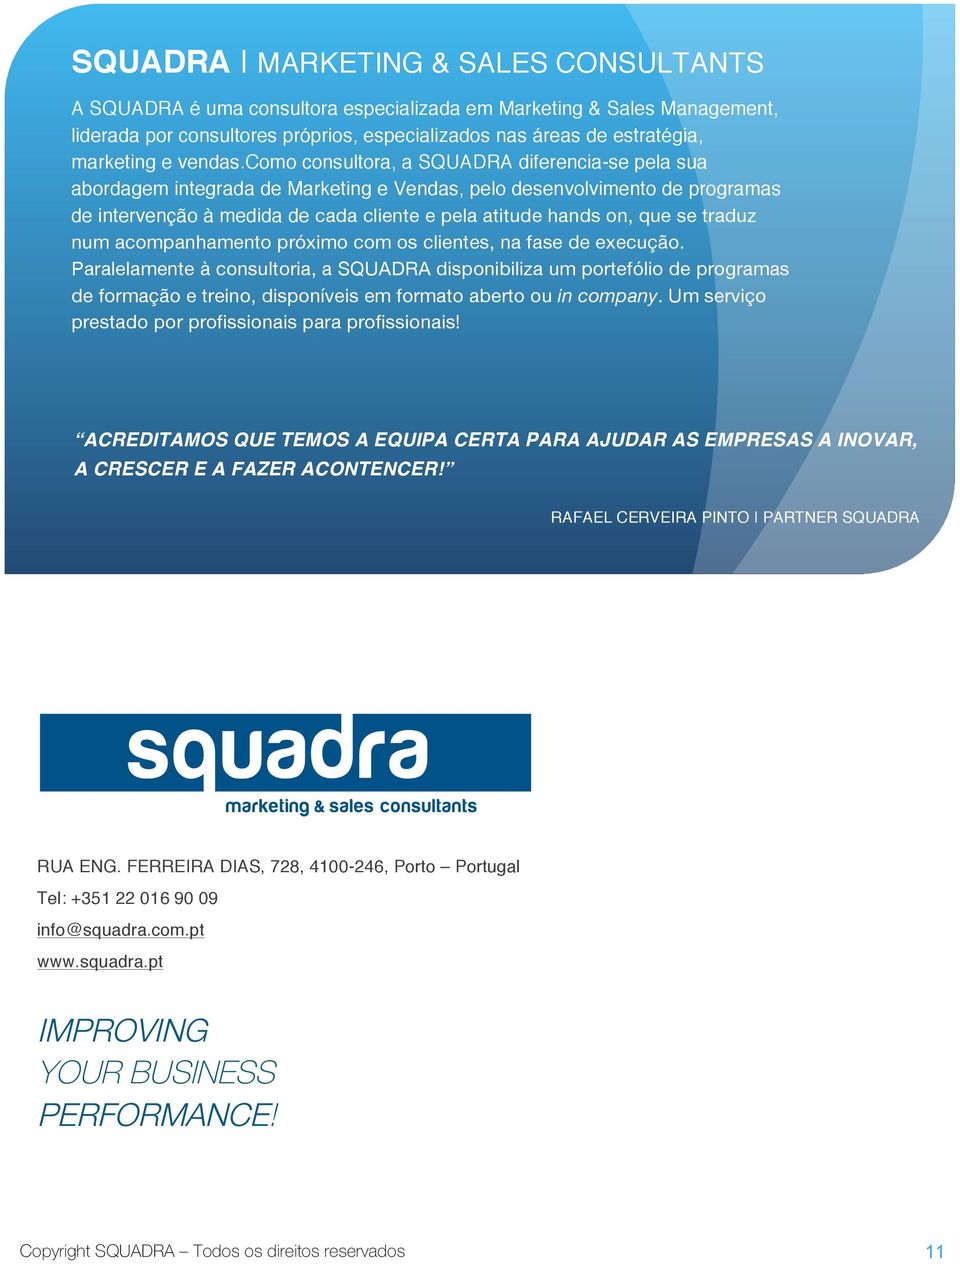 como consultora, a SQUADRA diferencia-se pela sua abordagem integrada de Marketing e Vendas, pelo desenvolvimento de programas de intervenção à medida de cada cliente e pela atitude hands on, que se